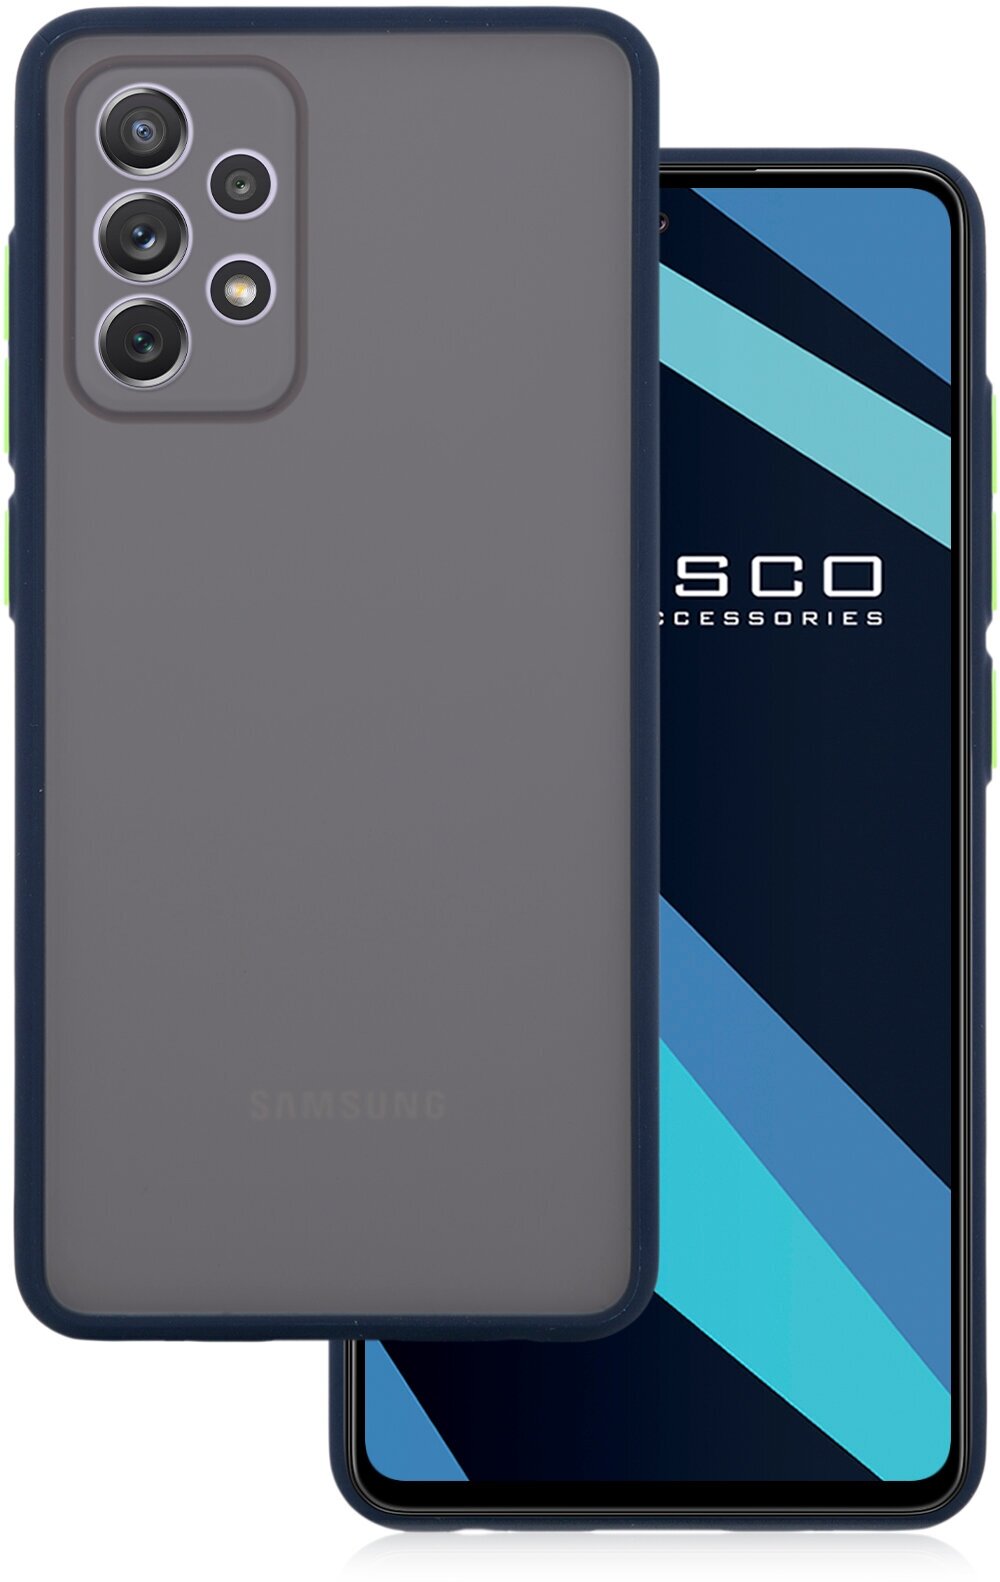 Противоударный чехол ROSCO для Samsung Galaxy A72 (Самсунг Галакси А72) гибридный чехол, гибкая окантовка, матовый синий с зелеными кнопками